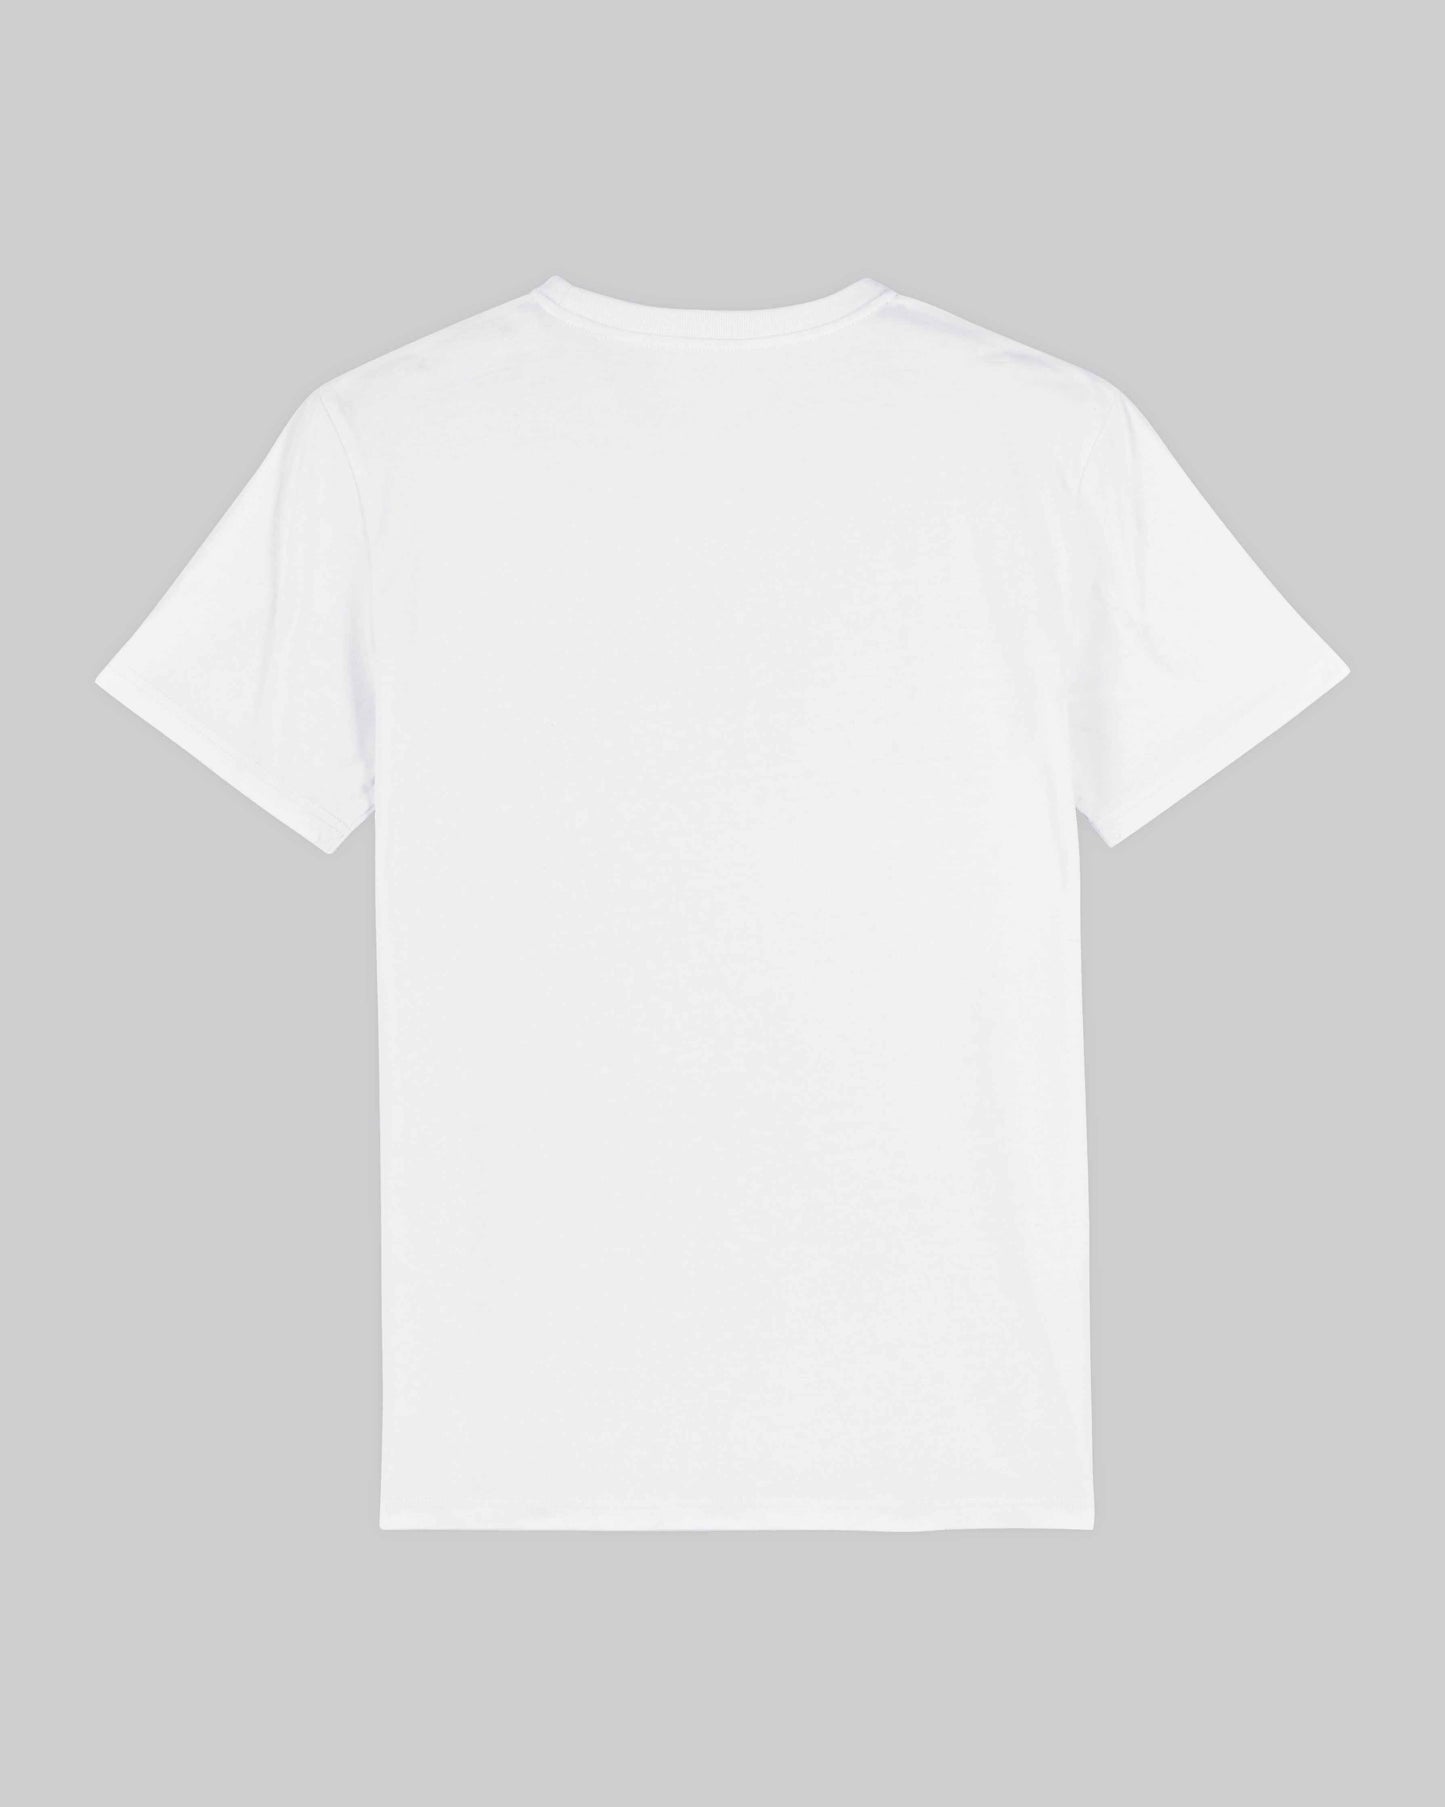 EINHORST® unisex Organic Shirt in weiß mit dem Motiv "equal-Regenbogen" in der Kombination schwarzer Regenbogen mit schwarzer Schrift, Bild von Shirt von hinten